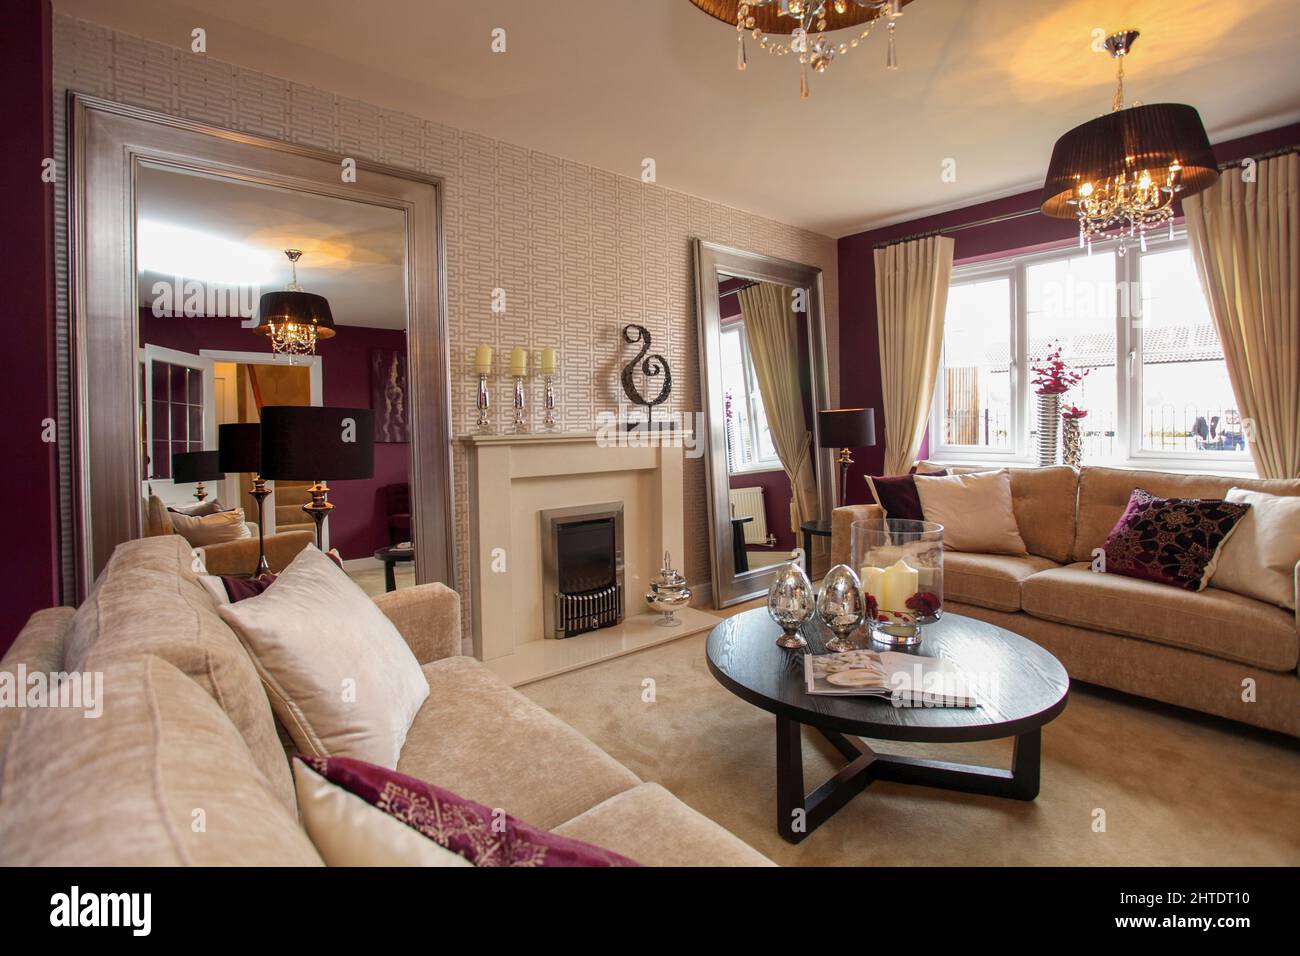 Salon moderne salon dans maison neuve, moquette beige et canapé-lit, violet, rouge foncé, murs bordeaux, table basse. Banque D'Images